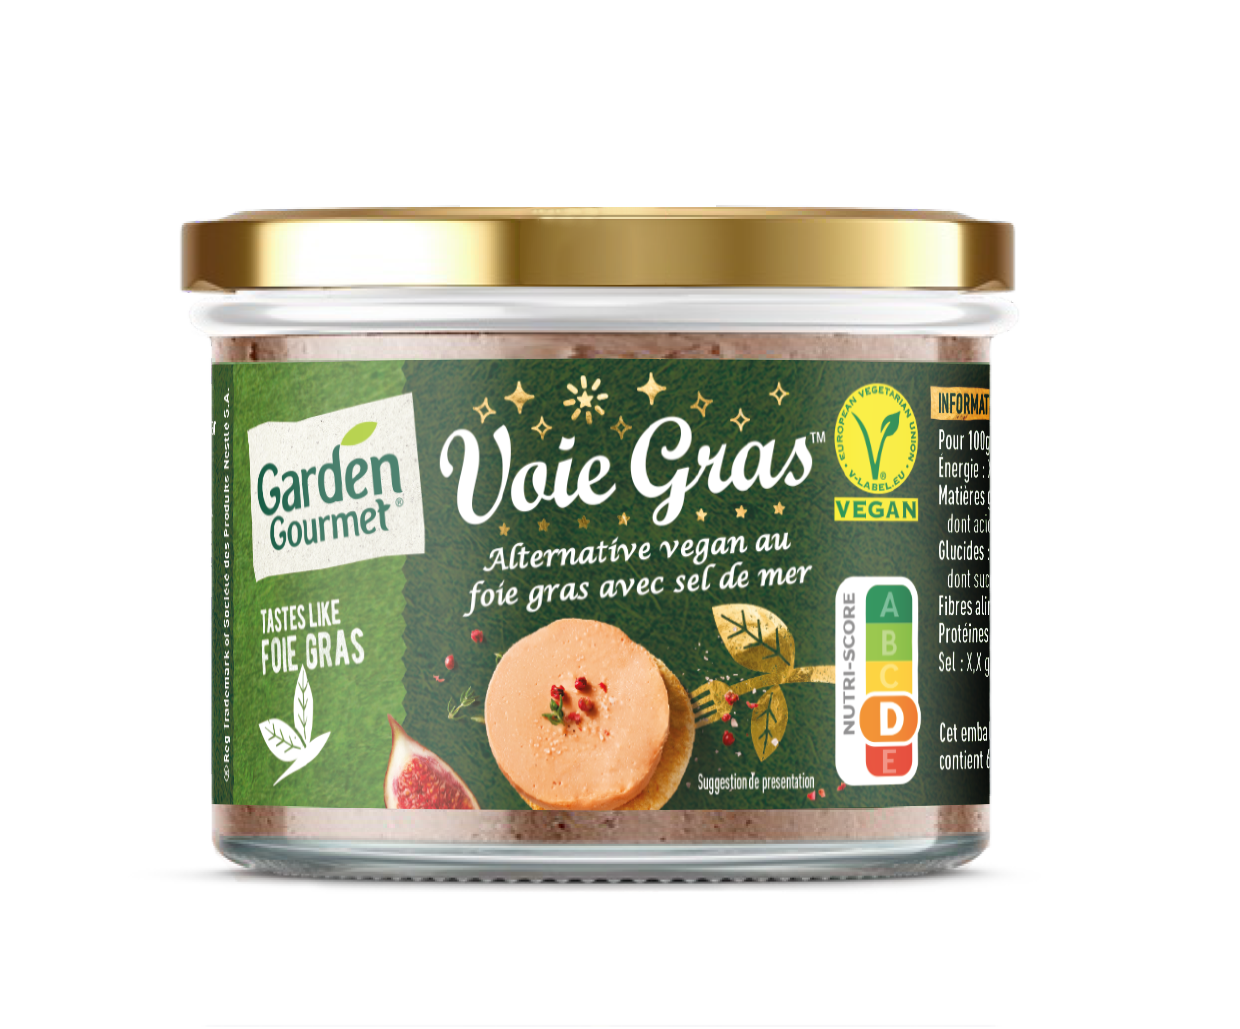 Voie Gras (Foie Gras) The new Garden Gourmet Voie Gras is the perfect alternative to traditional foie gras.